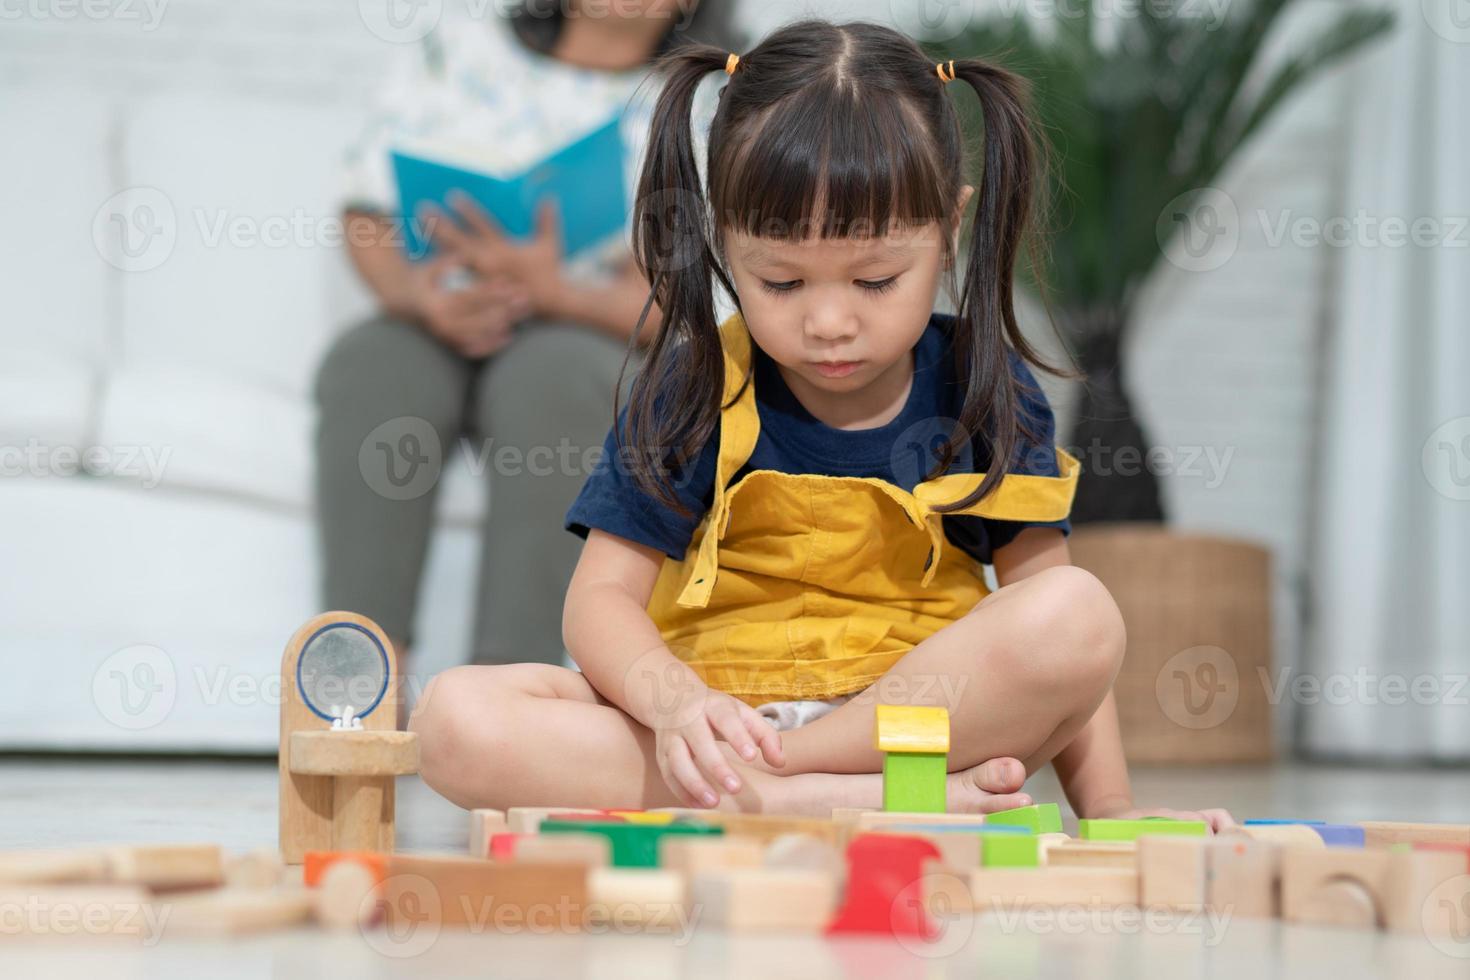 menina asiática bonitinha brincando com blocos de brinquedos coloridos, crianças brincam com brinquedos educativos no jardim de infância ou creche. jogo criativo do conceito de desenvolvimento infantil, criança criança no berçário. foto